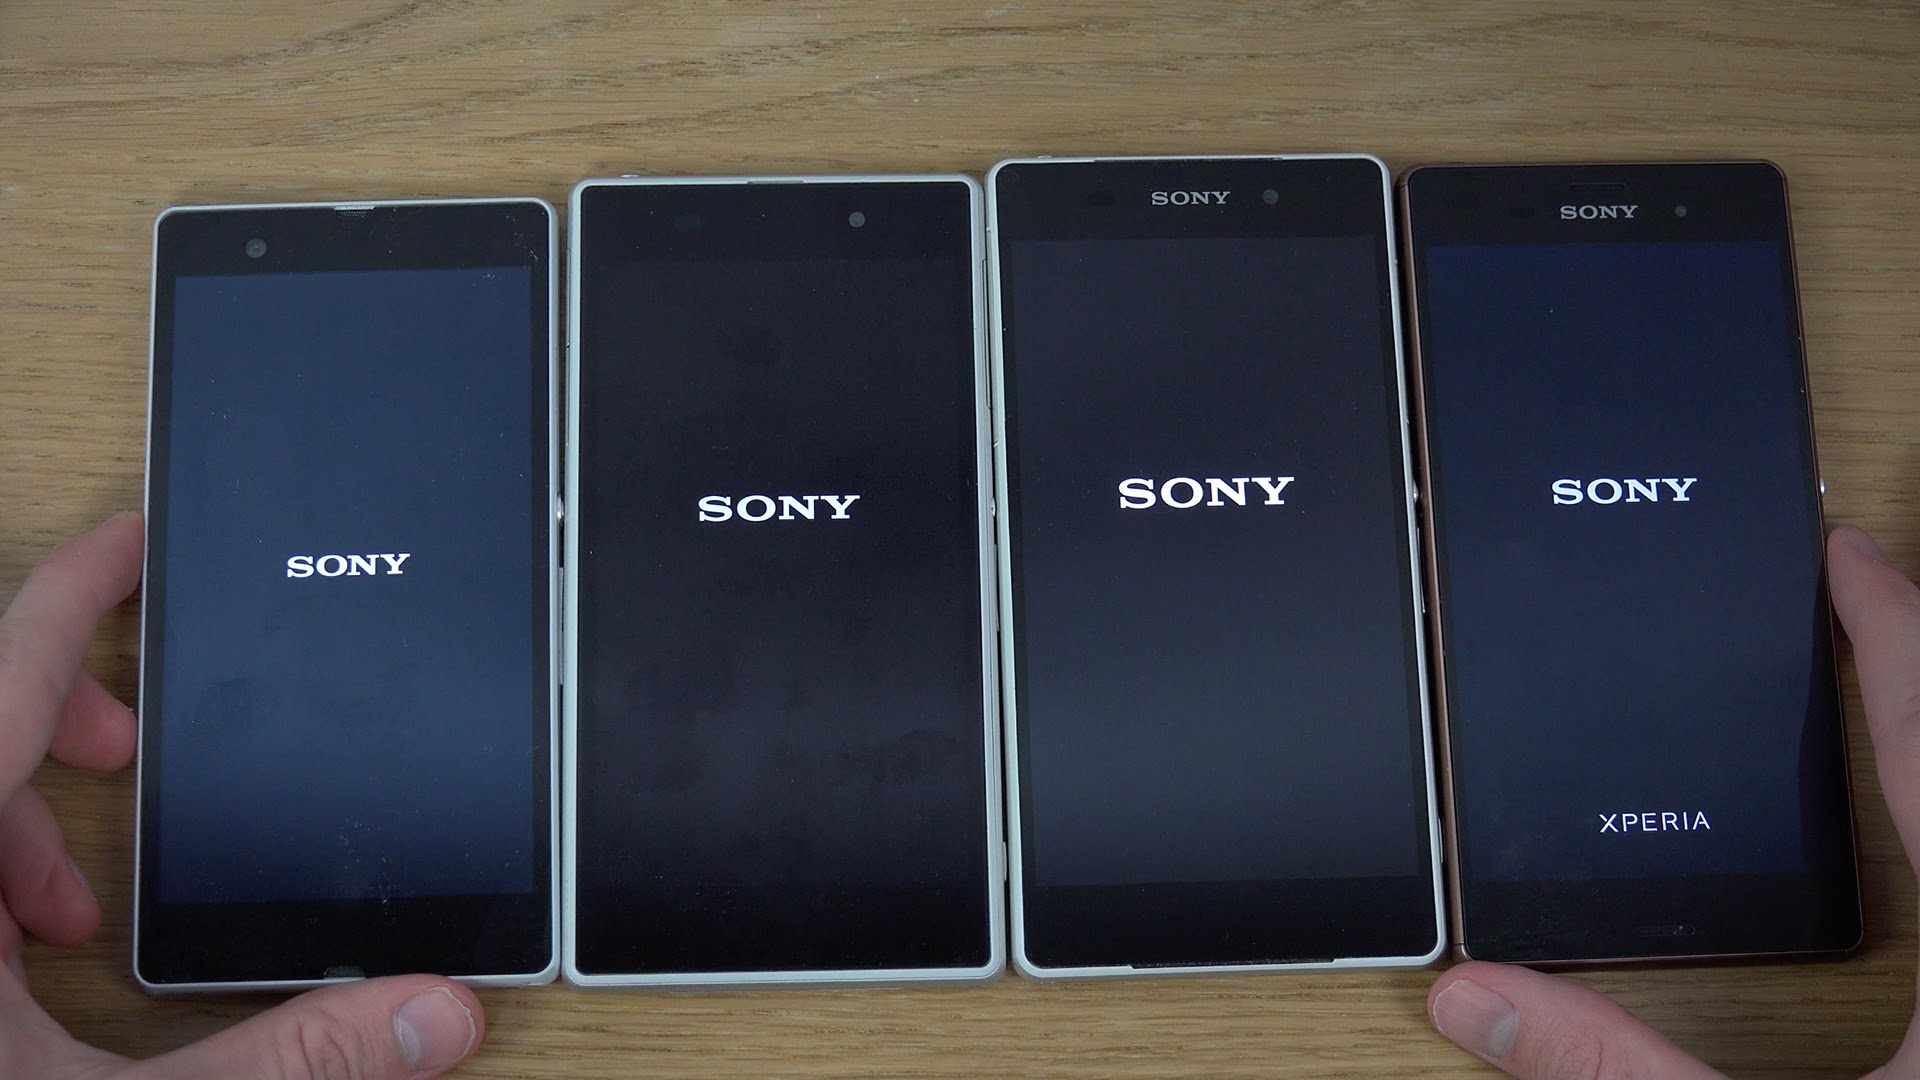 Sony xperia сравнение. Sony Xperia z1 z2 z3. Sony Xperia z2 Compact. Sony Xperia z1 vs Sony Xperia z. Sony Xperia z, z1, z2, z3.